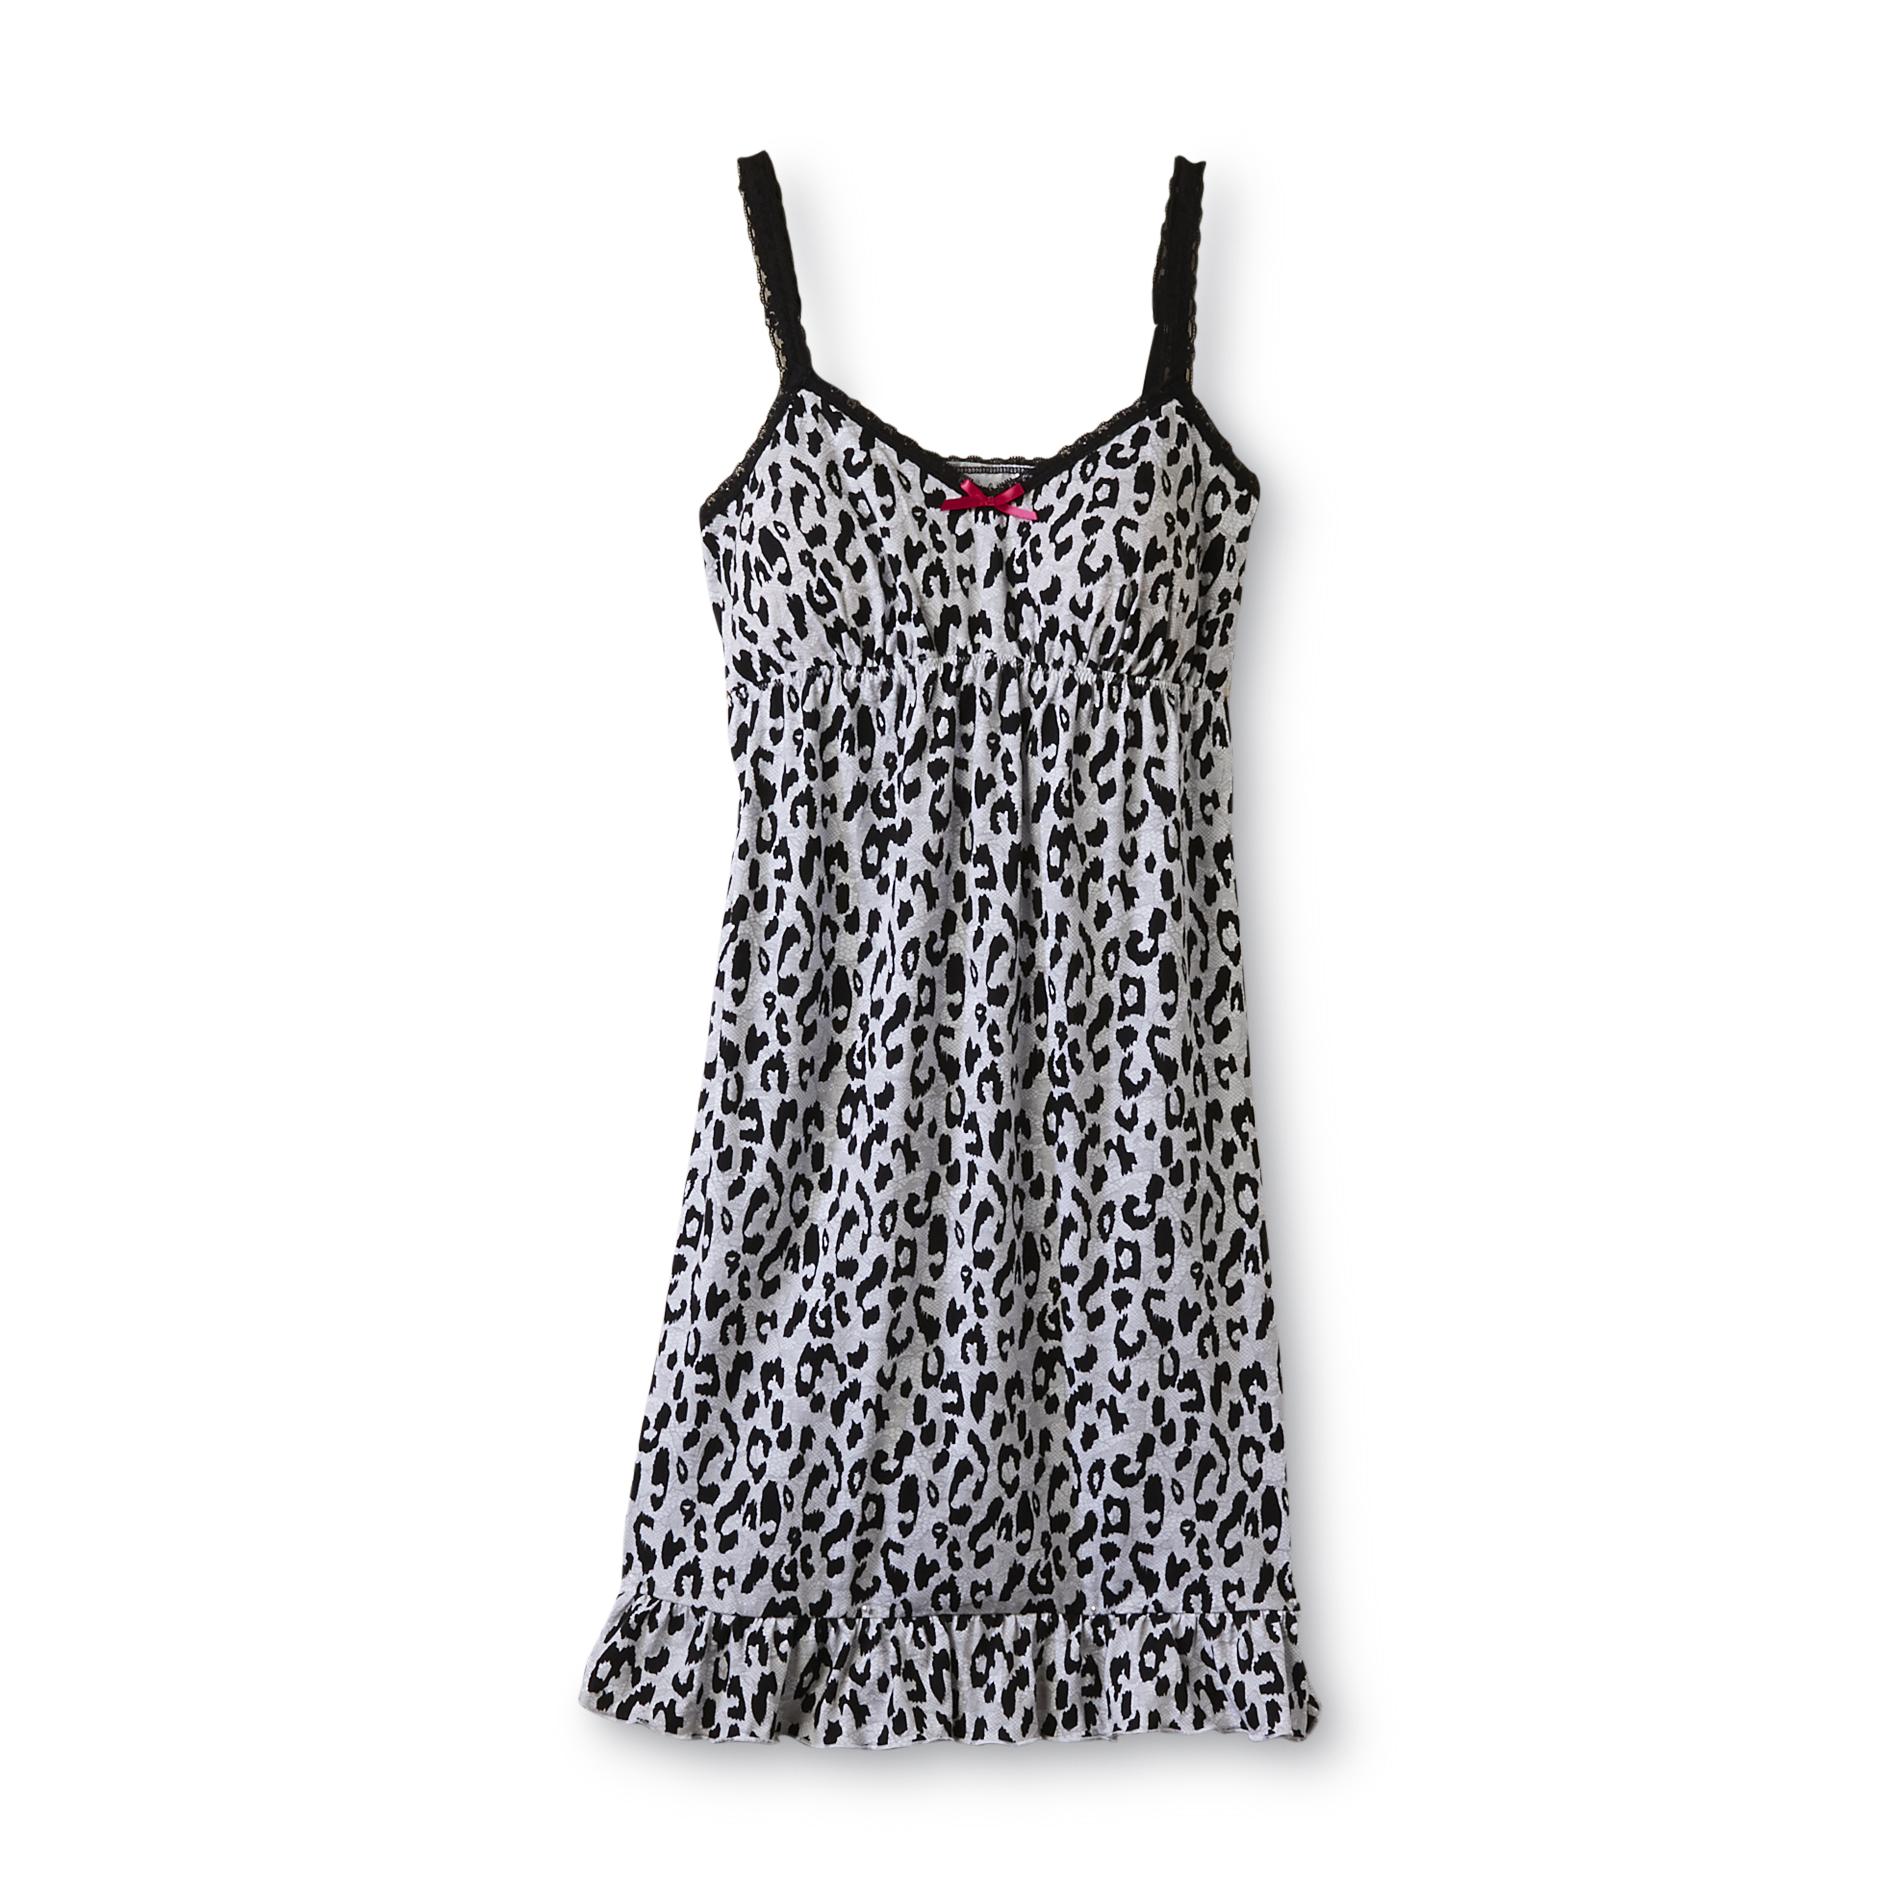 Joe Boxer Women's Lace Chemise Nightgown - Leopard Print